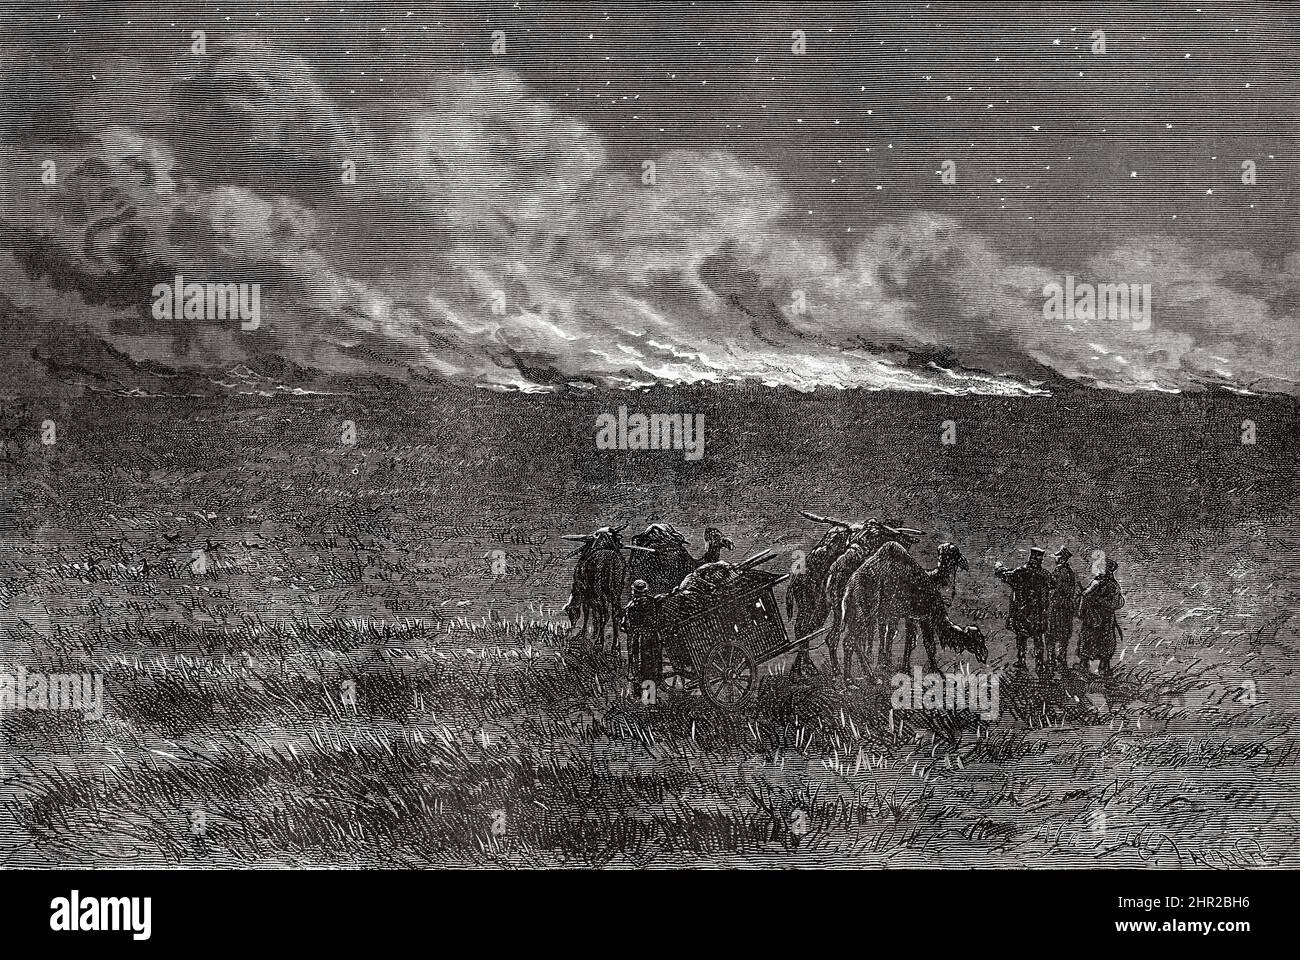 Feu dans les steppes, Mongolie. Asie. Voyage en Mongolie par Nikolai Mijailovich Przewalski en 1870-1873, le Tour du monde 1877 Banque D'Images